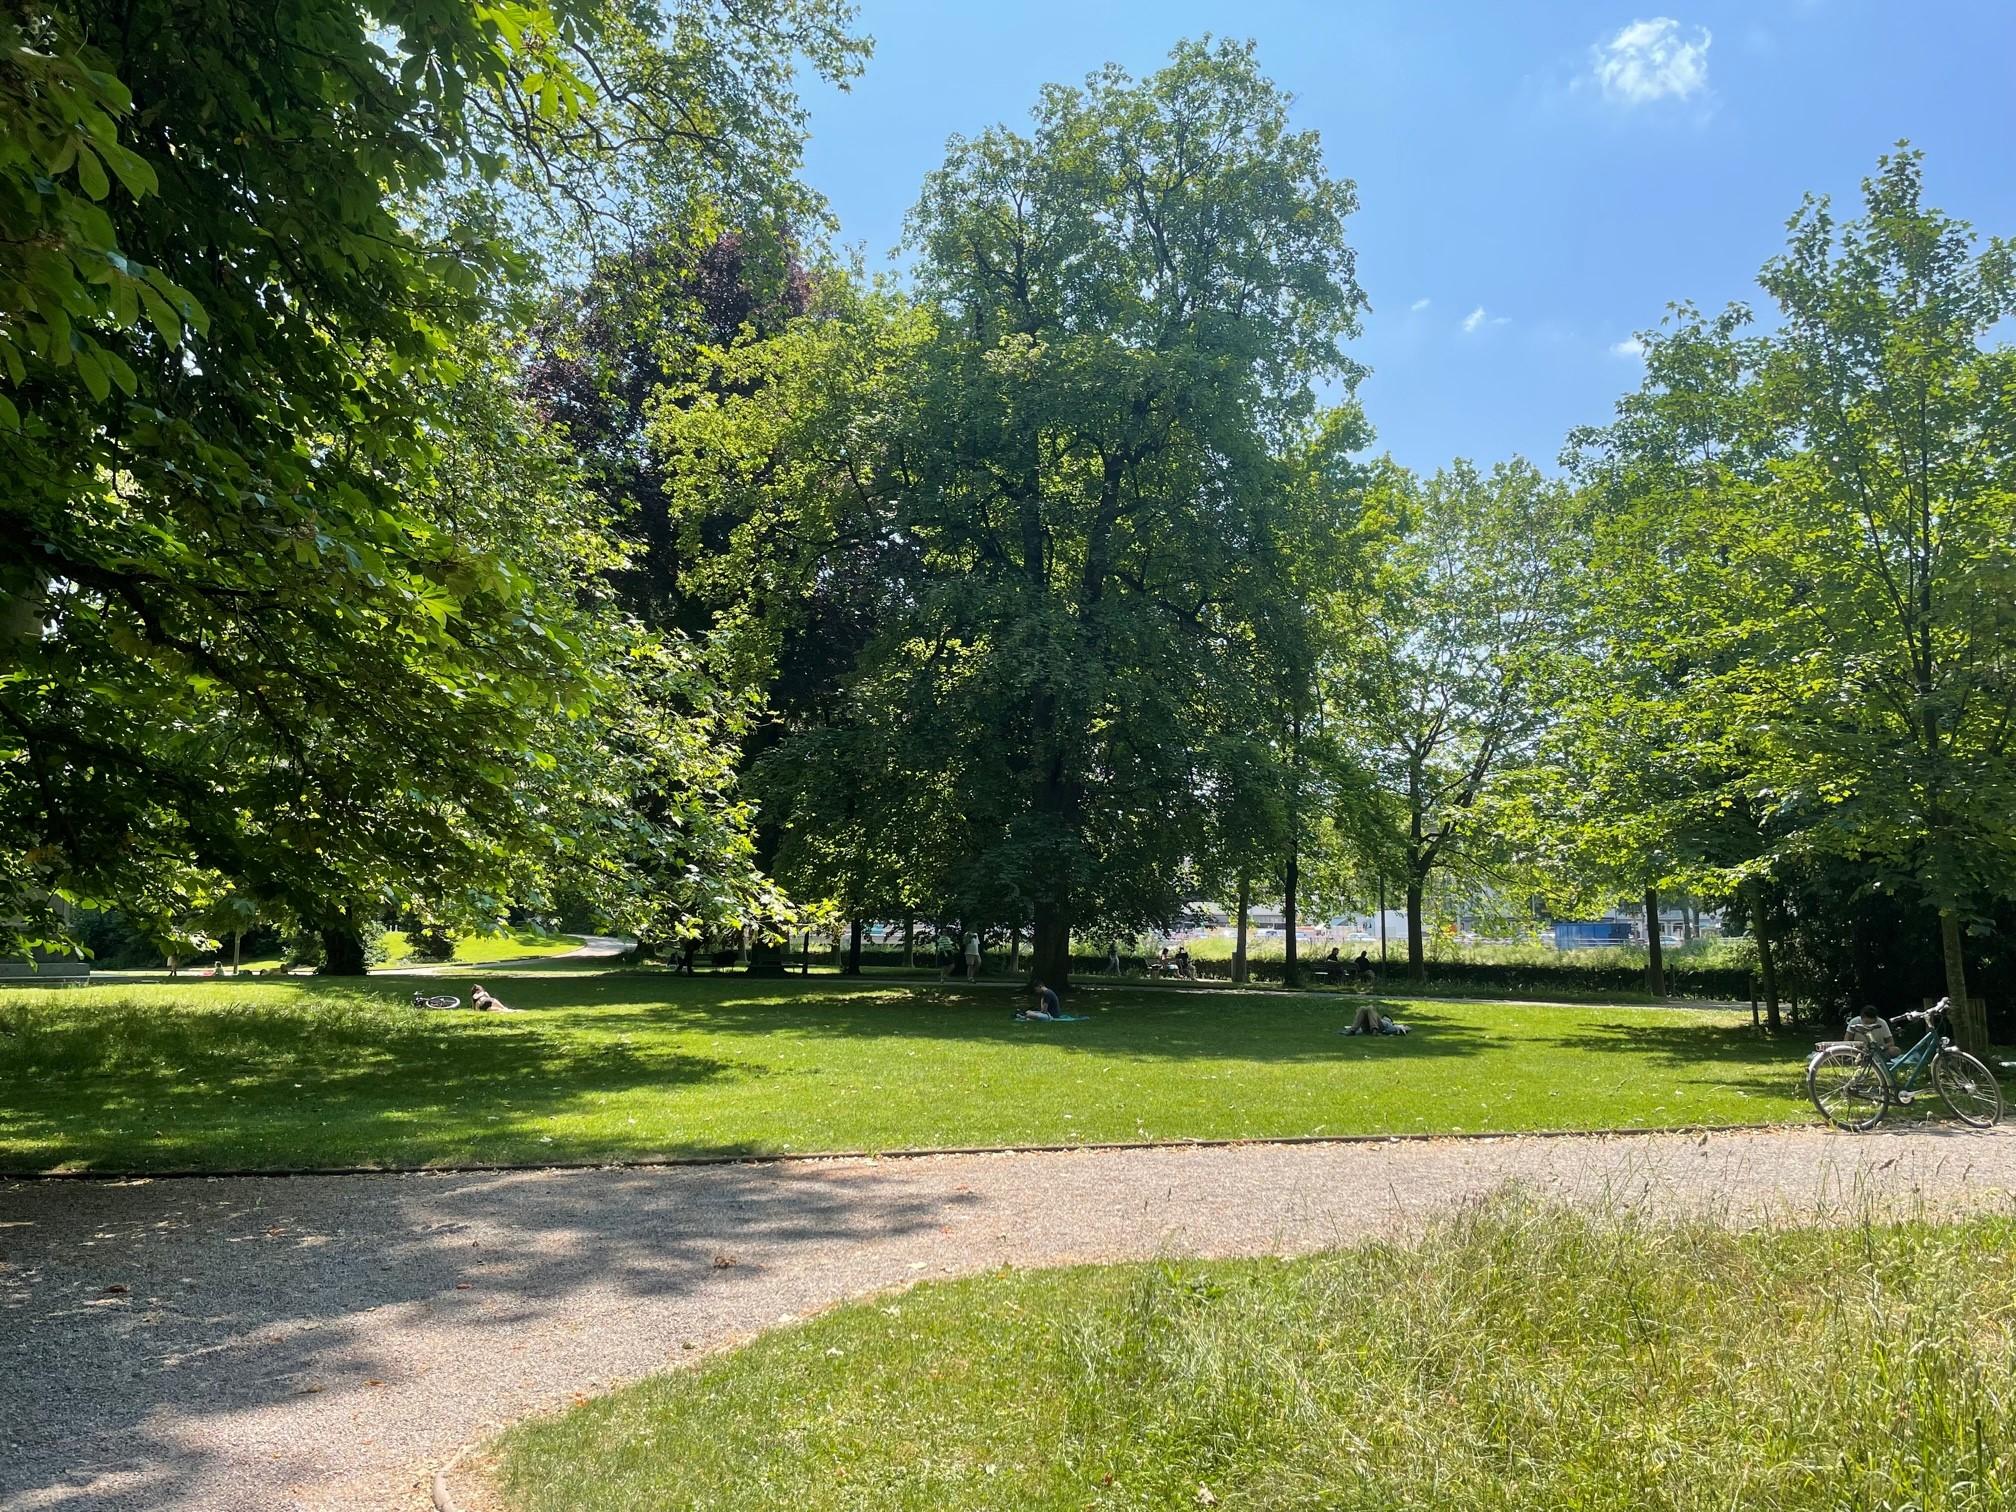 Sichtbar ist ein der Platzspitz Park mit Rasenflächen, Bäumen und einem Weg aus hellem Kies, welcher eine temporäre Befahrbarkeit gewährleistet.